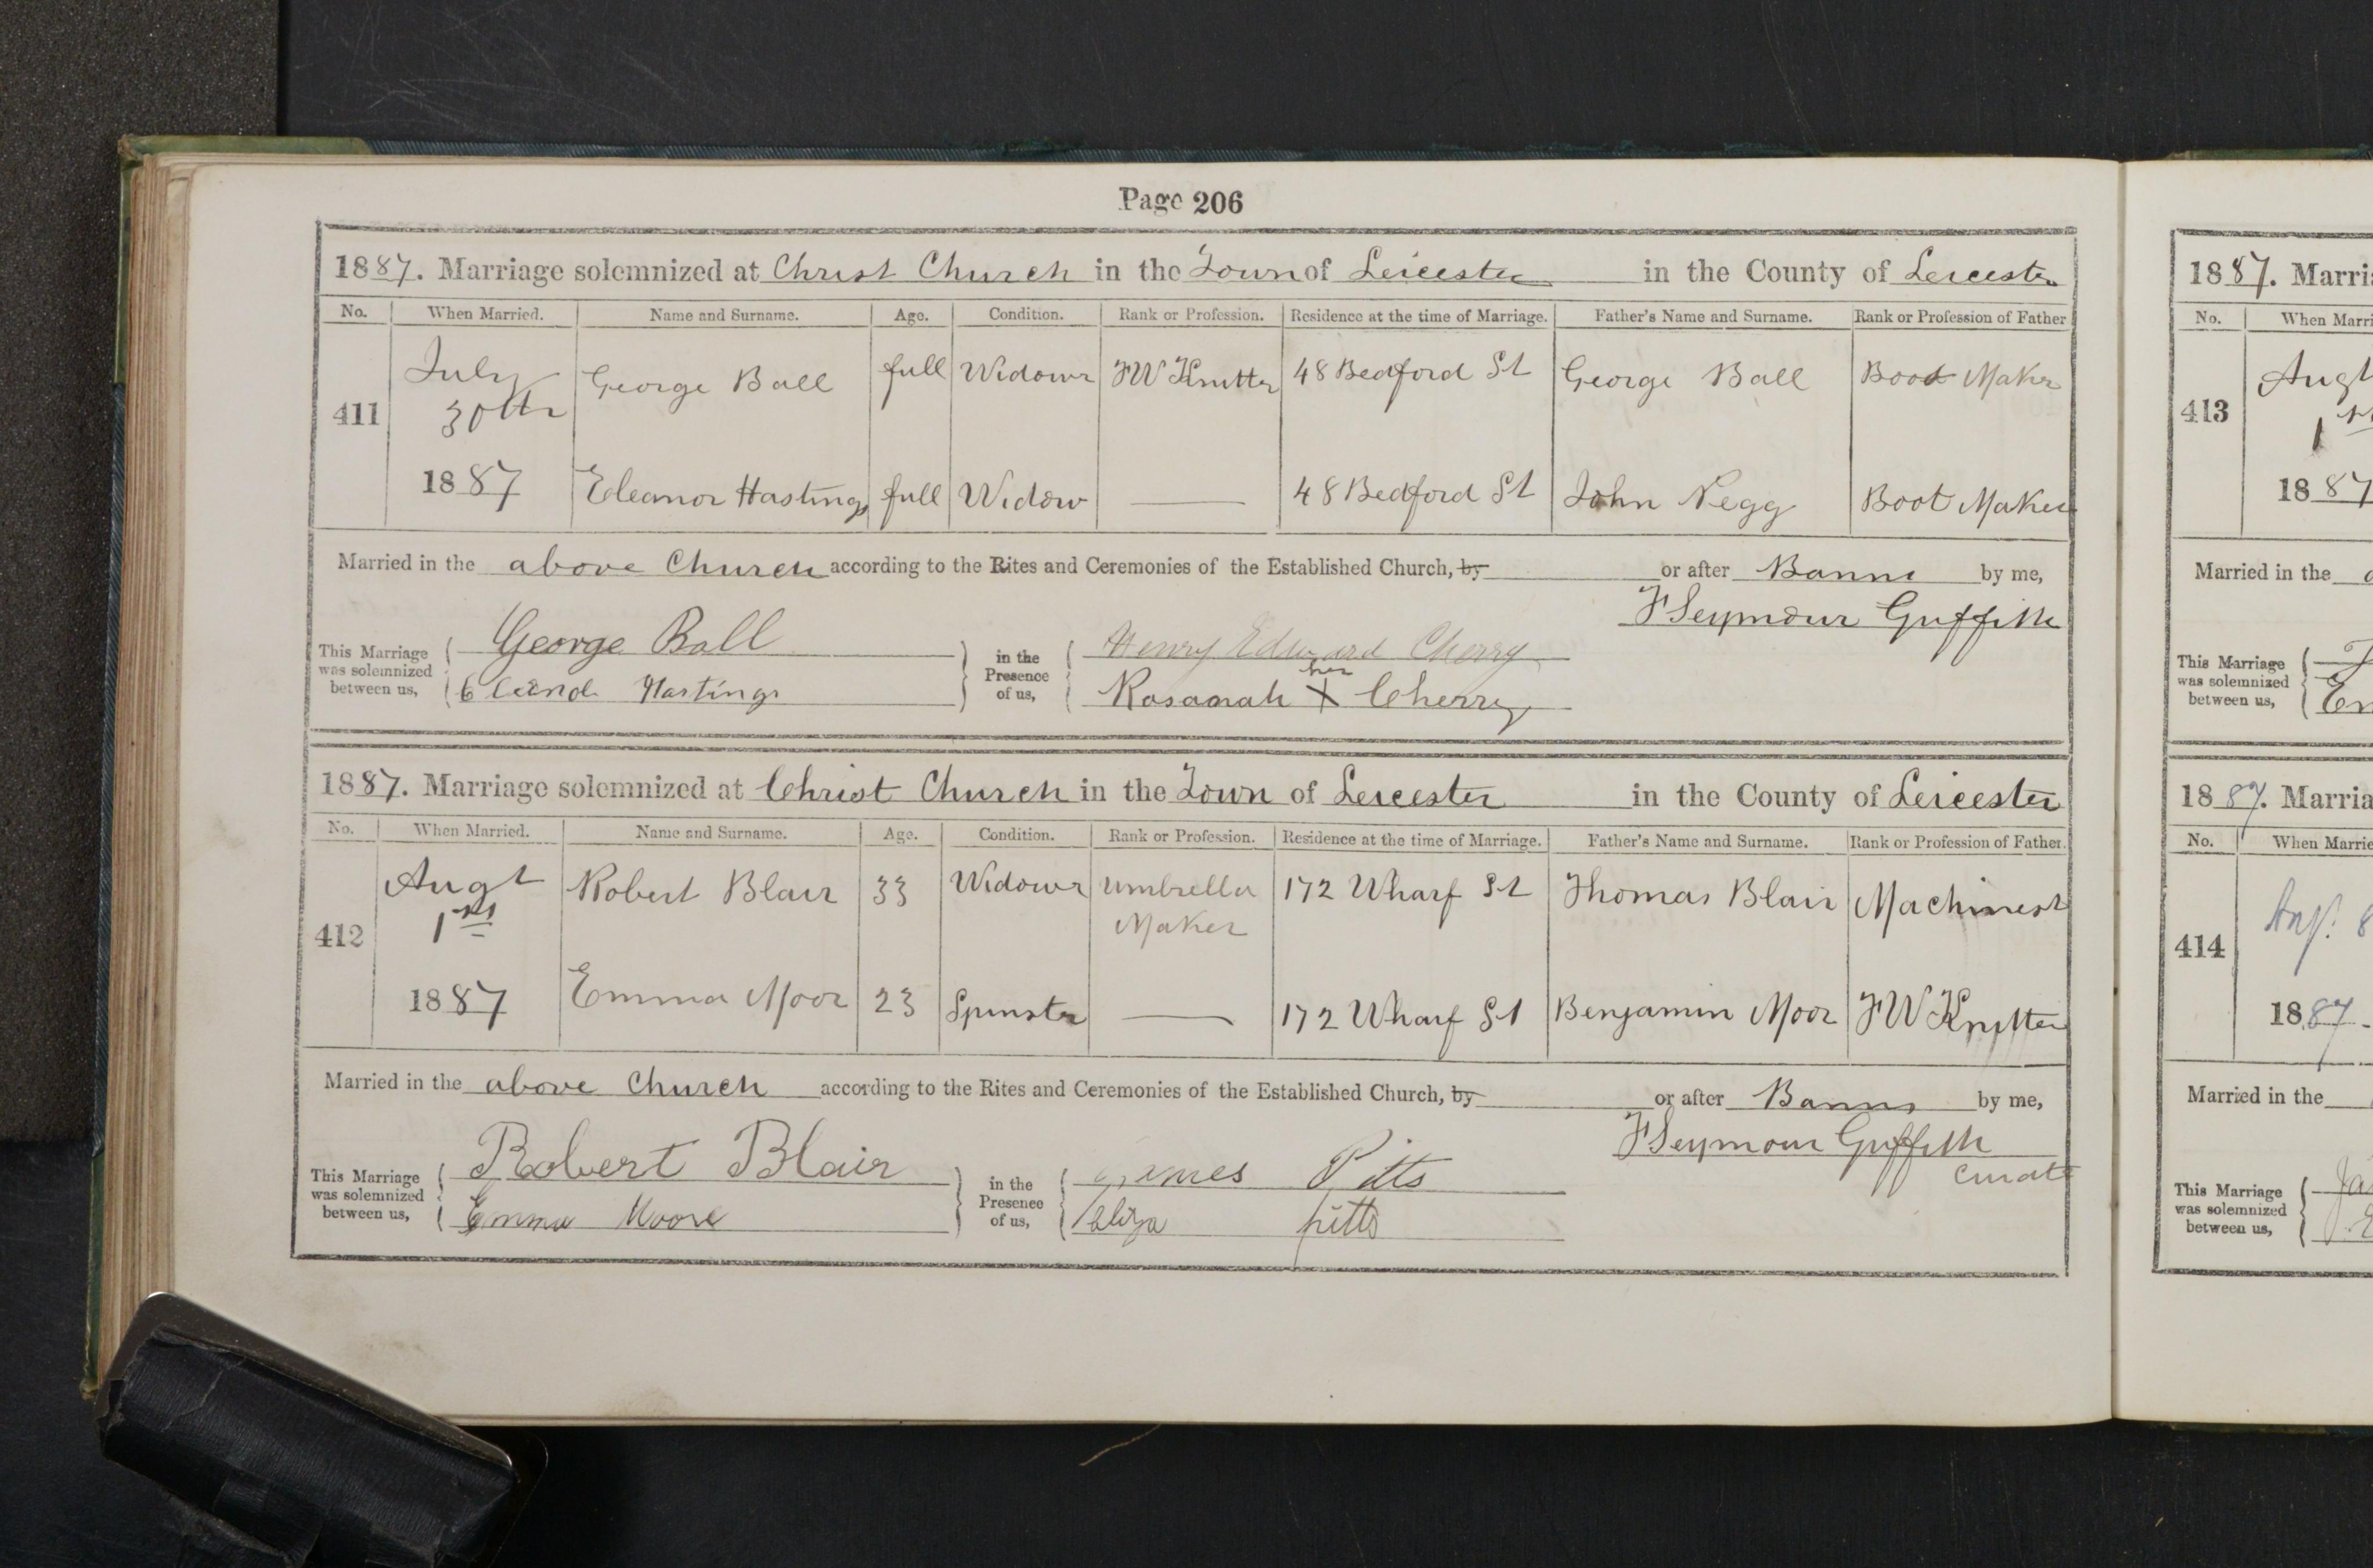 1887 marriage of Emma Moor to Robert Blair